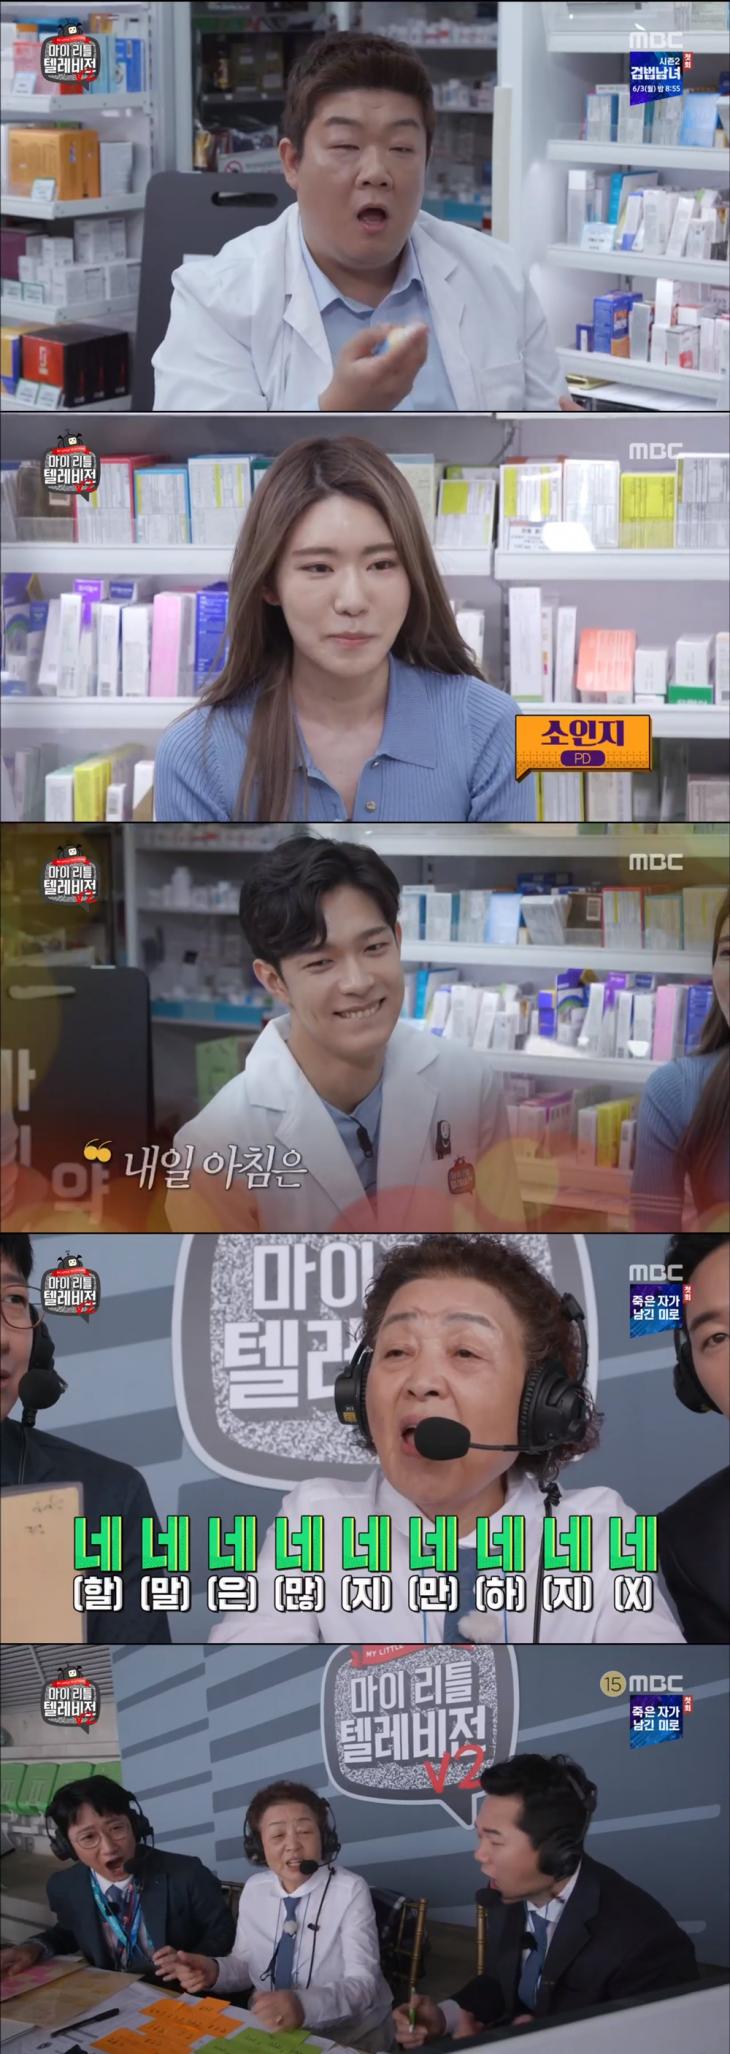 MBC '마이 리틀 텔레비전 시즌2' 방송 캡쳐